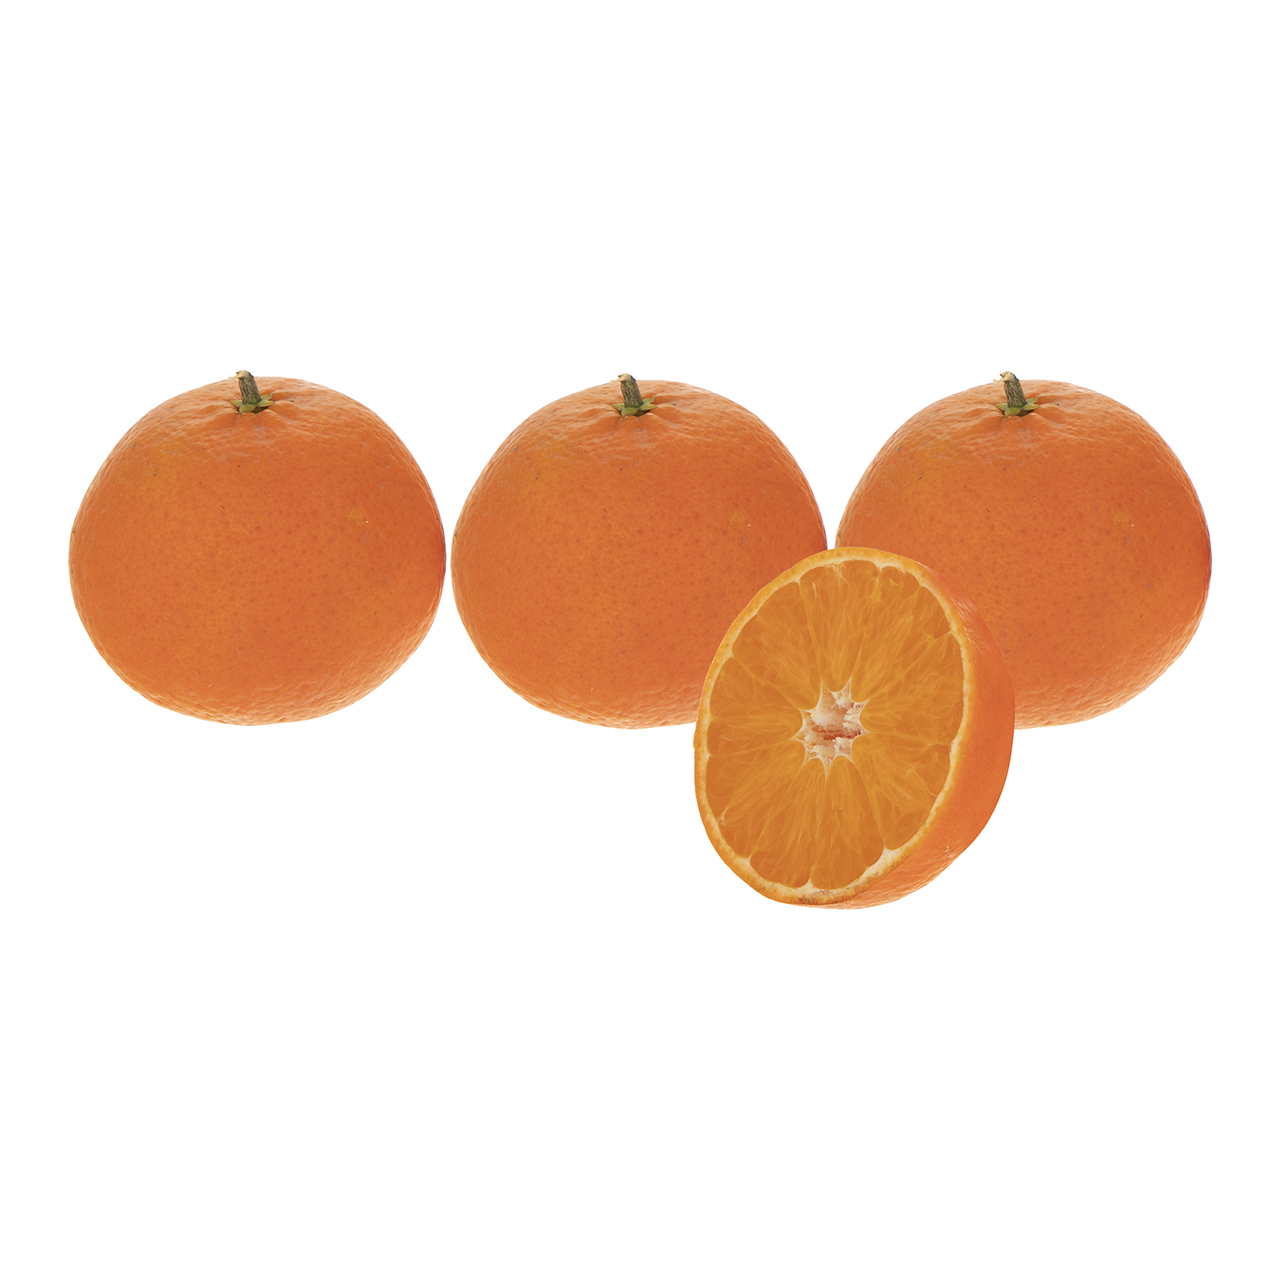 نارنگی پچ فله - 1 کیلوگرم